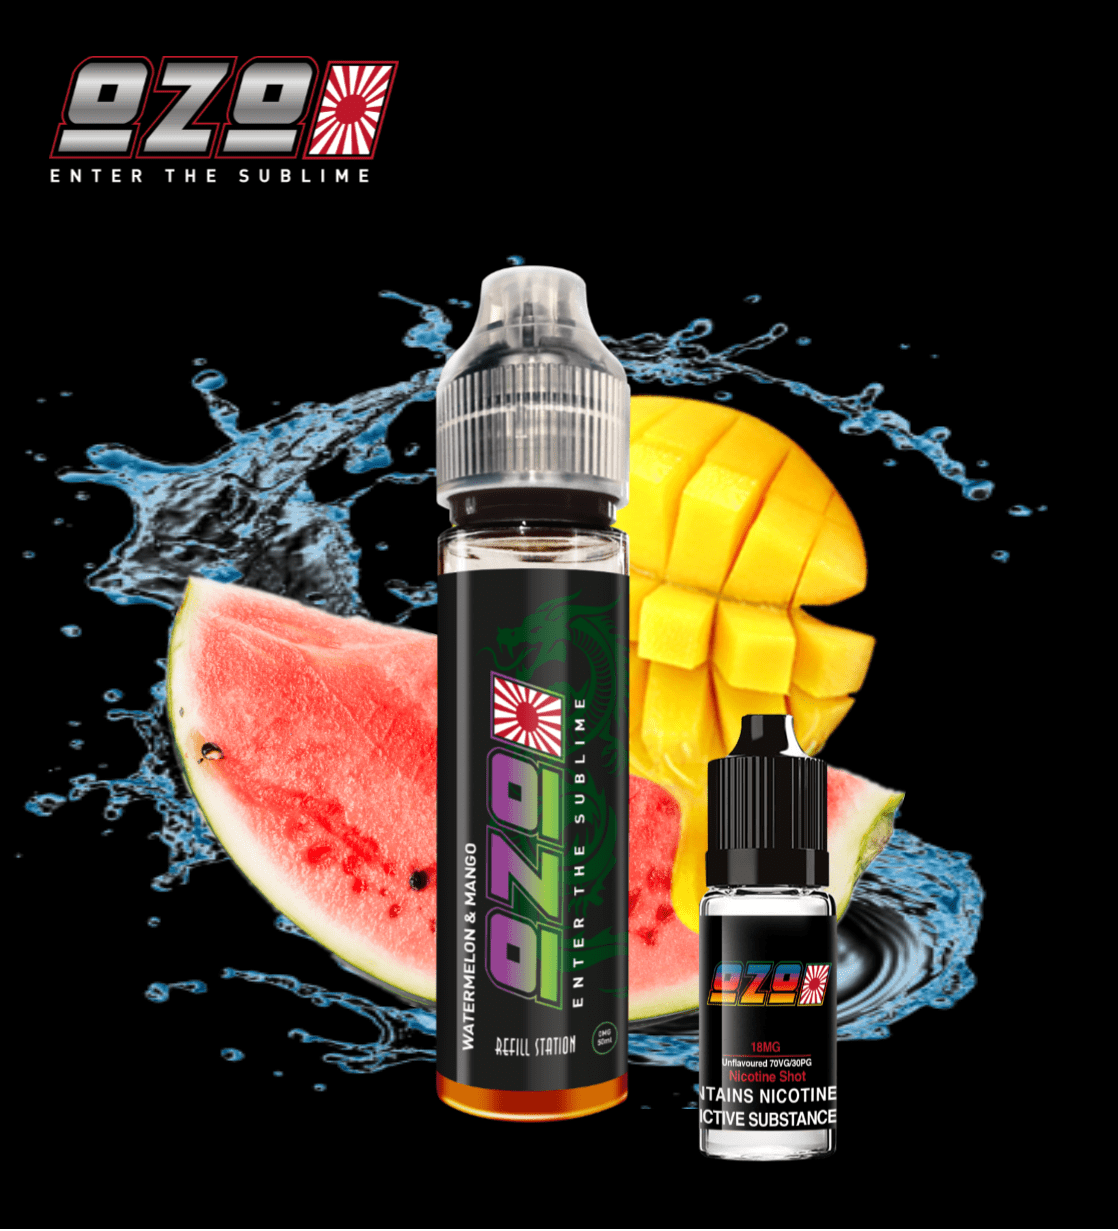 OZO Watermelon & Mango 6 Pack